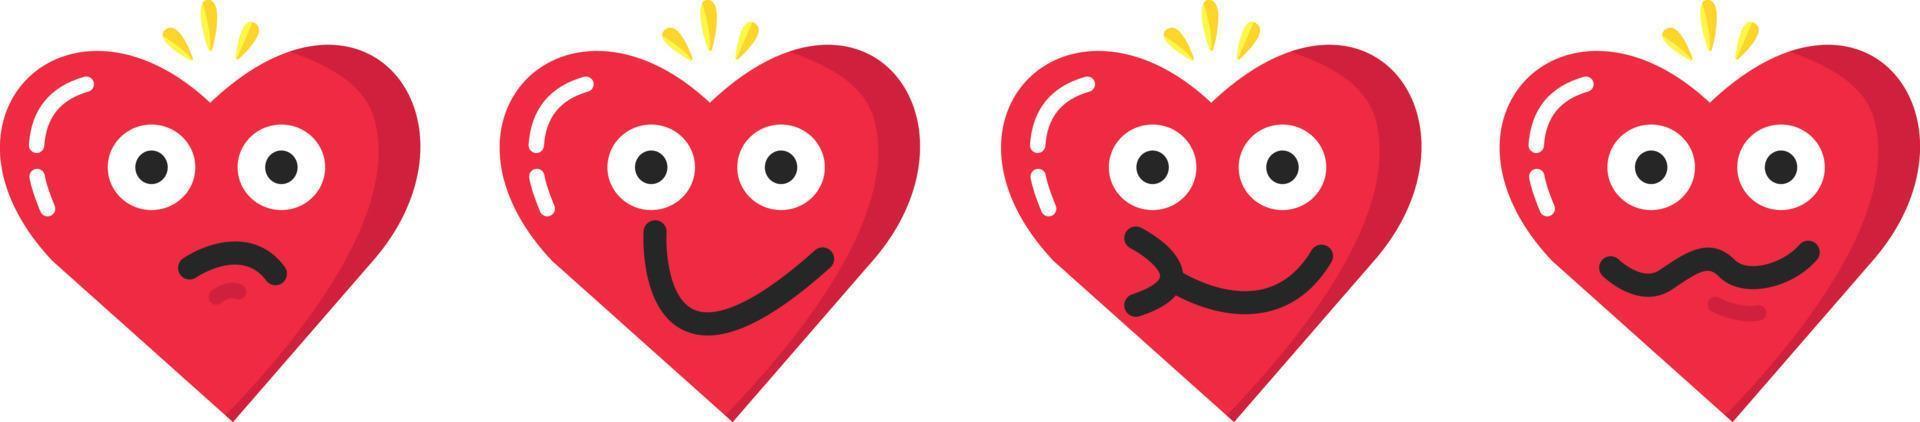 dia dos namorados emoji emoticon coração vermelho diabo mal zangado vetor